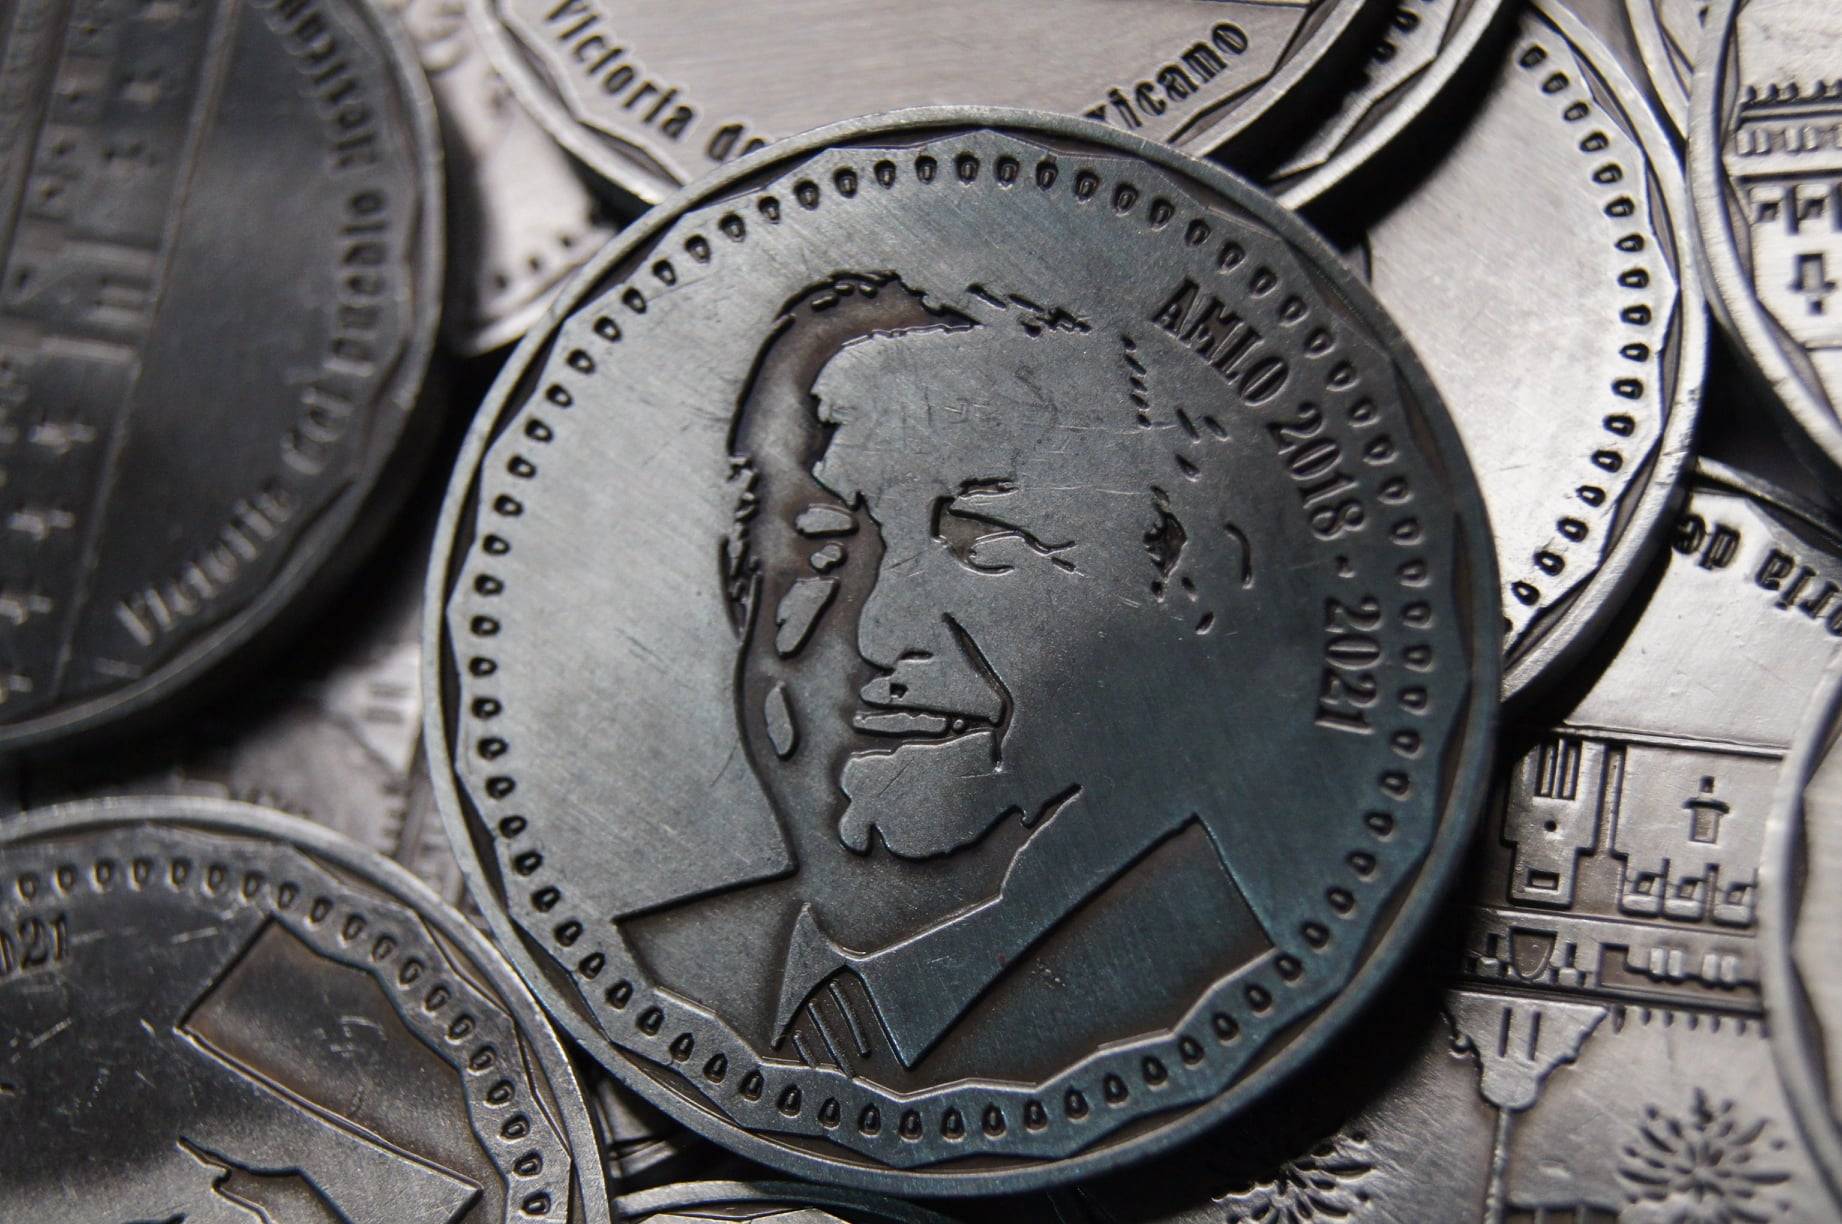 Circulan monedas conmemorativas de AMLO; ¿ya tienes las tuyas?